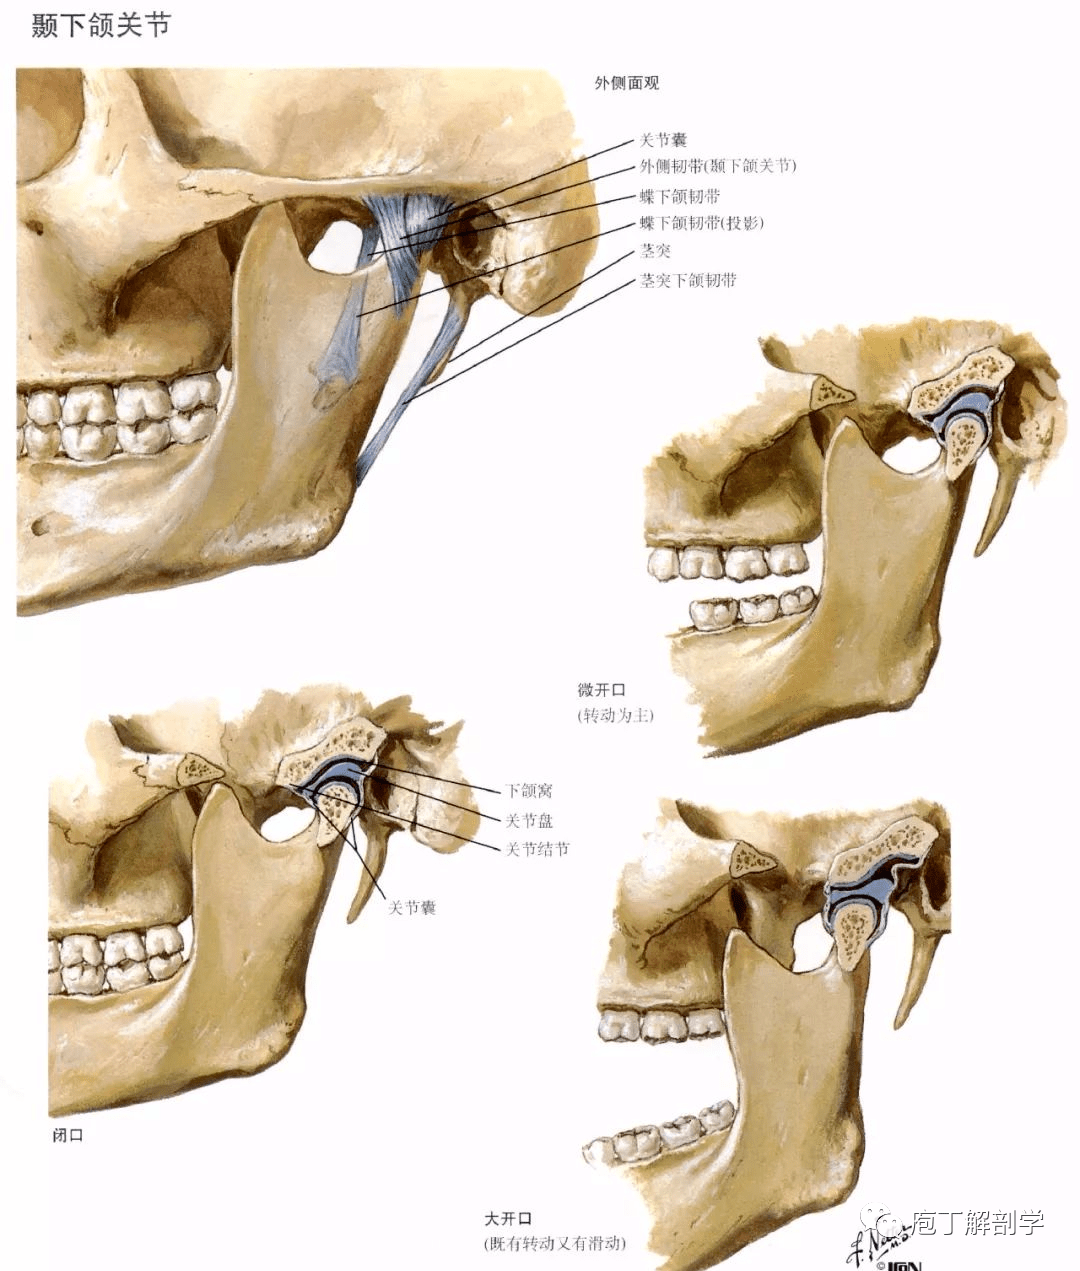 内耳门 前庭蜗神经 面神经 颅底外面观 颅骨的连结——颞下颌关节